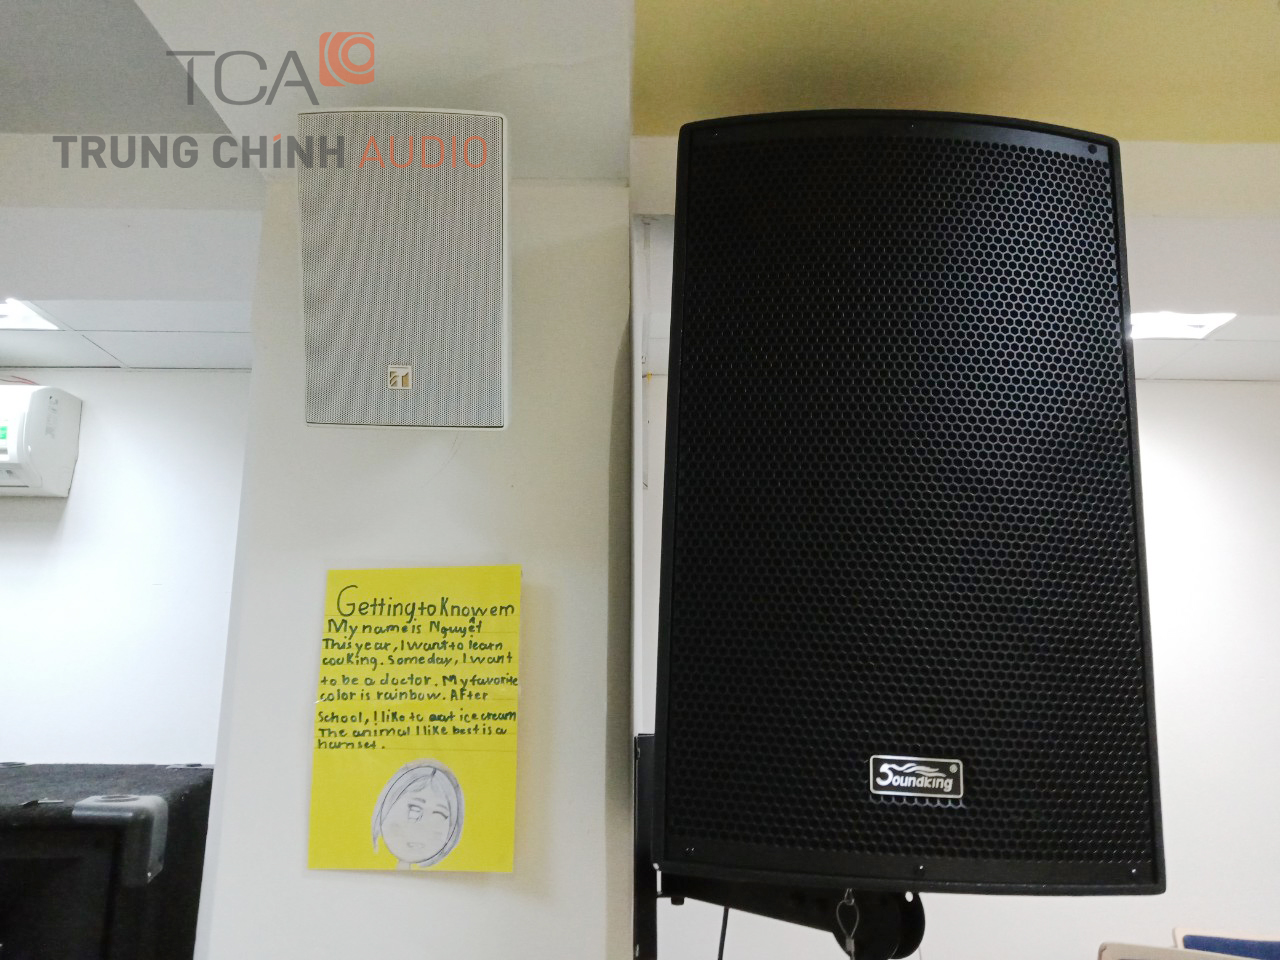 Lắp đặt hệ thống âm thanh tại trường quốc tế Việt Úc